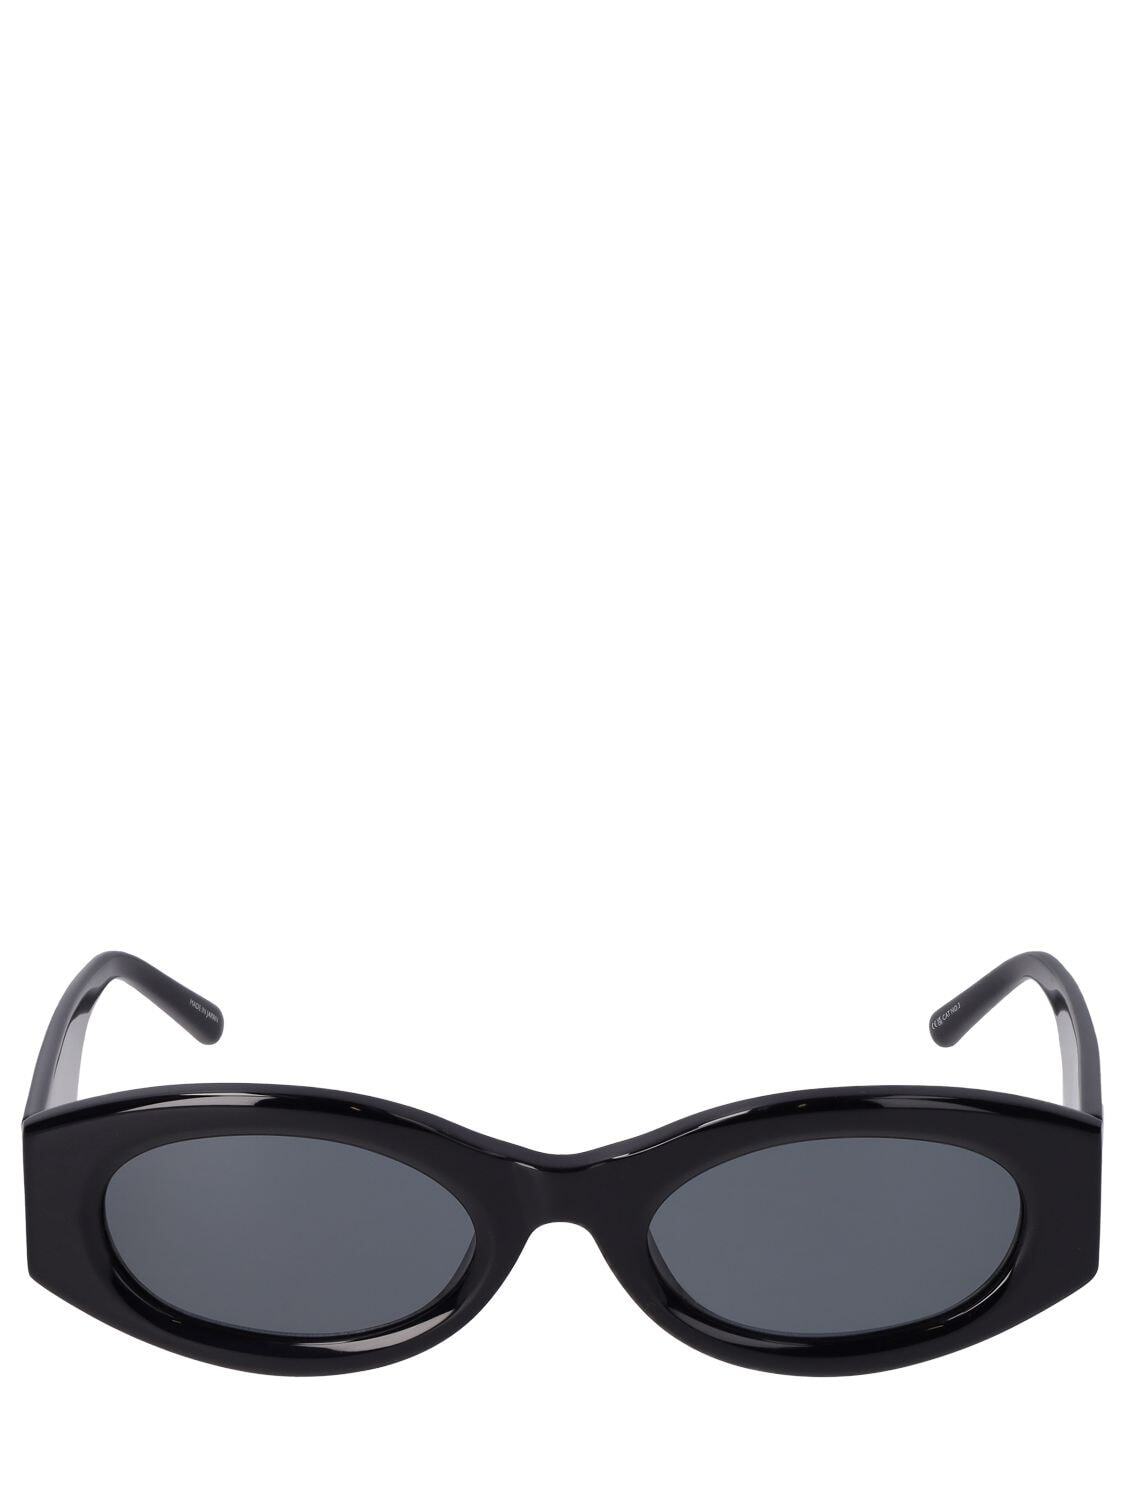 THE ATTICO Berta Oval Acetate Sunglasses in black / grey